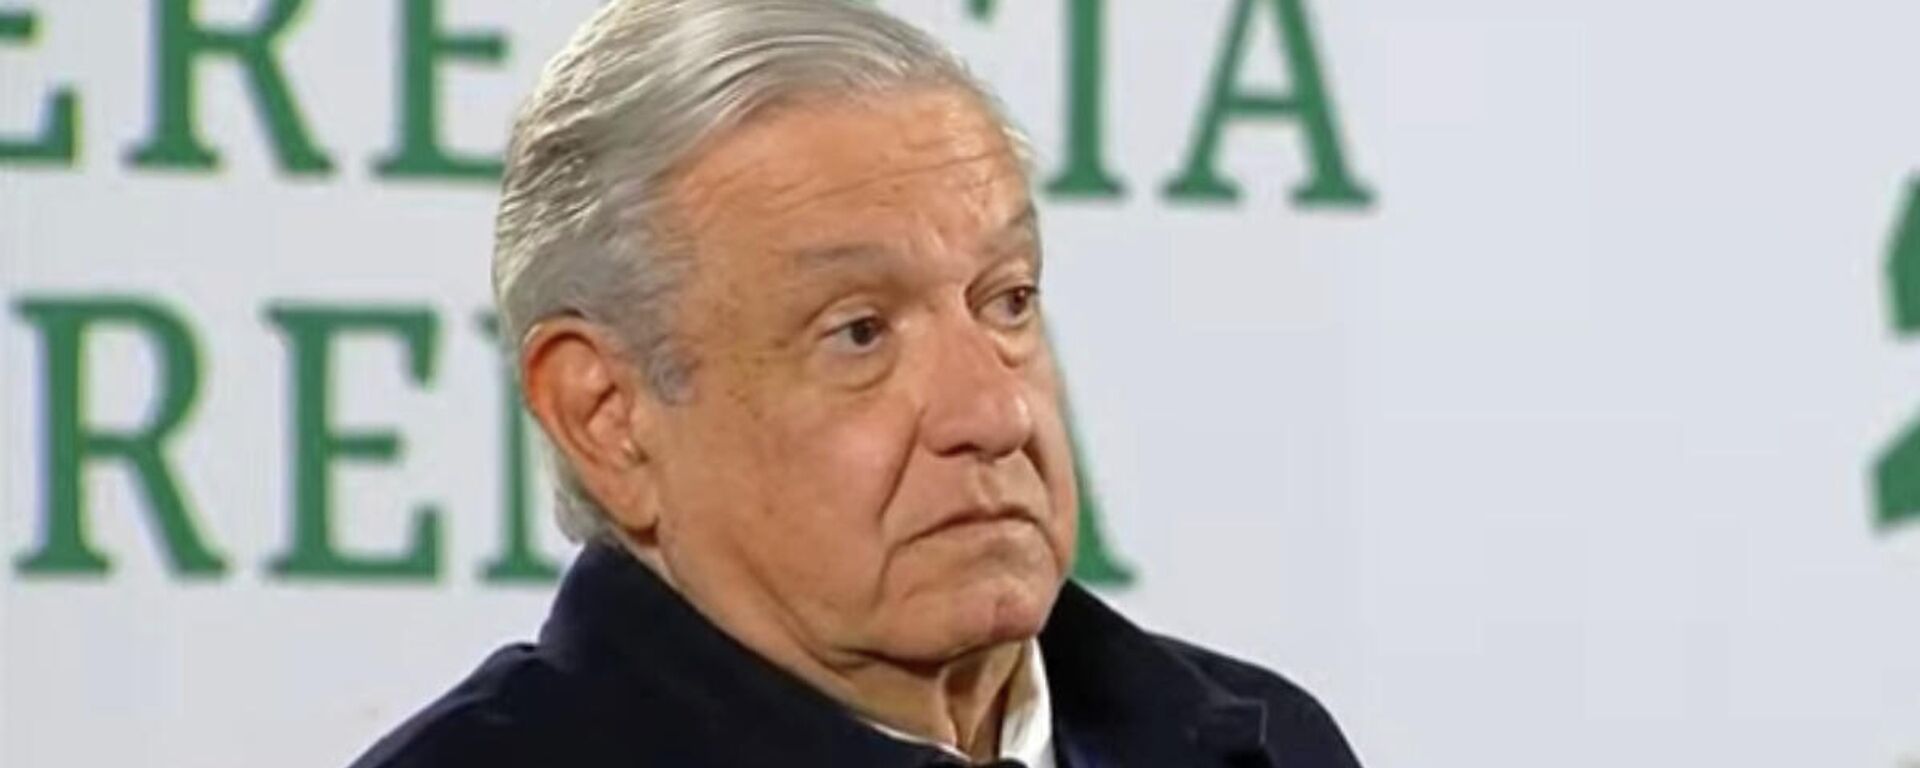 Andrés Manuel López Obrador, presidente de México - Sputnik Mundo, 1920, 13.12.2021